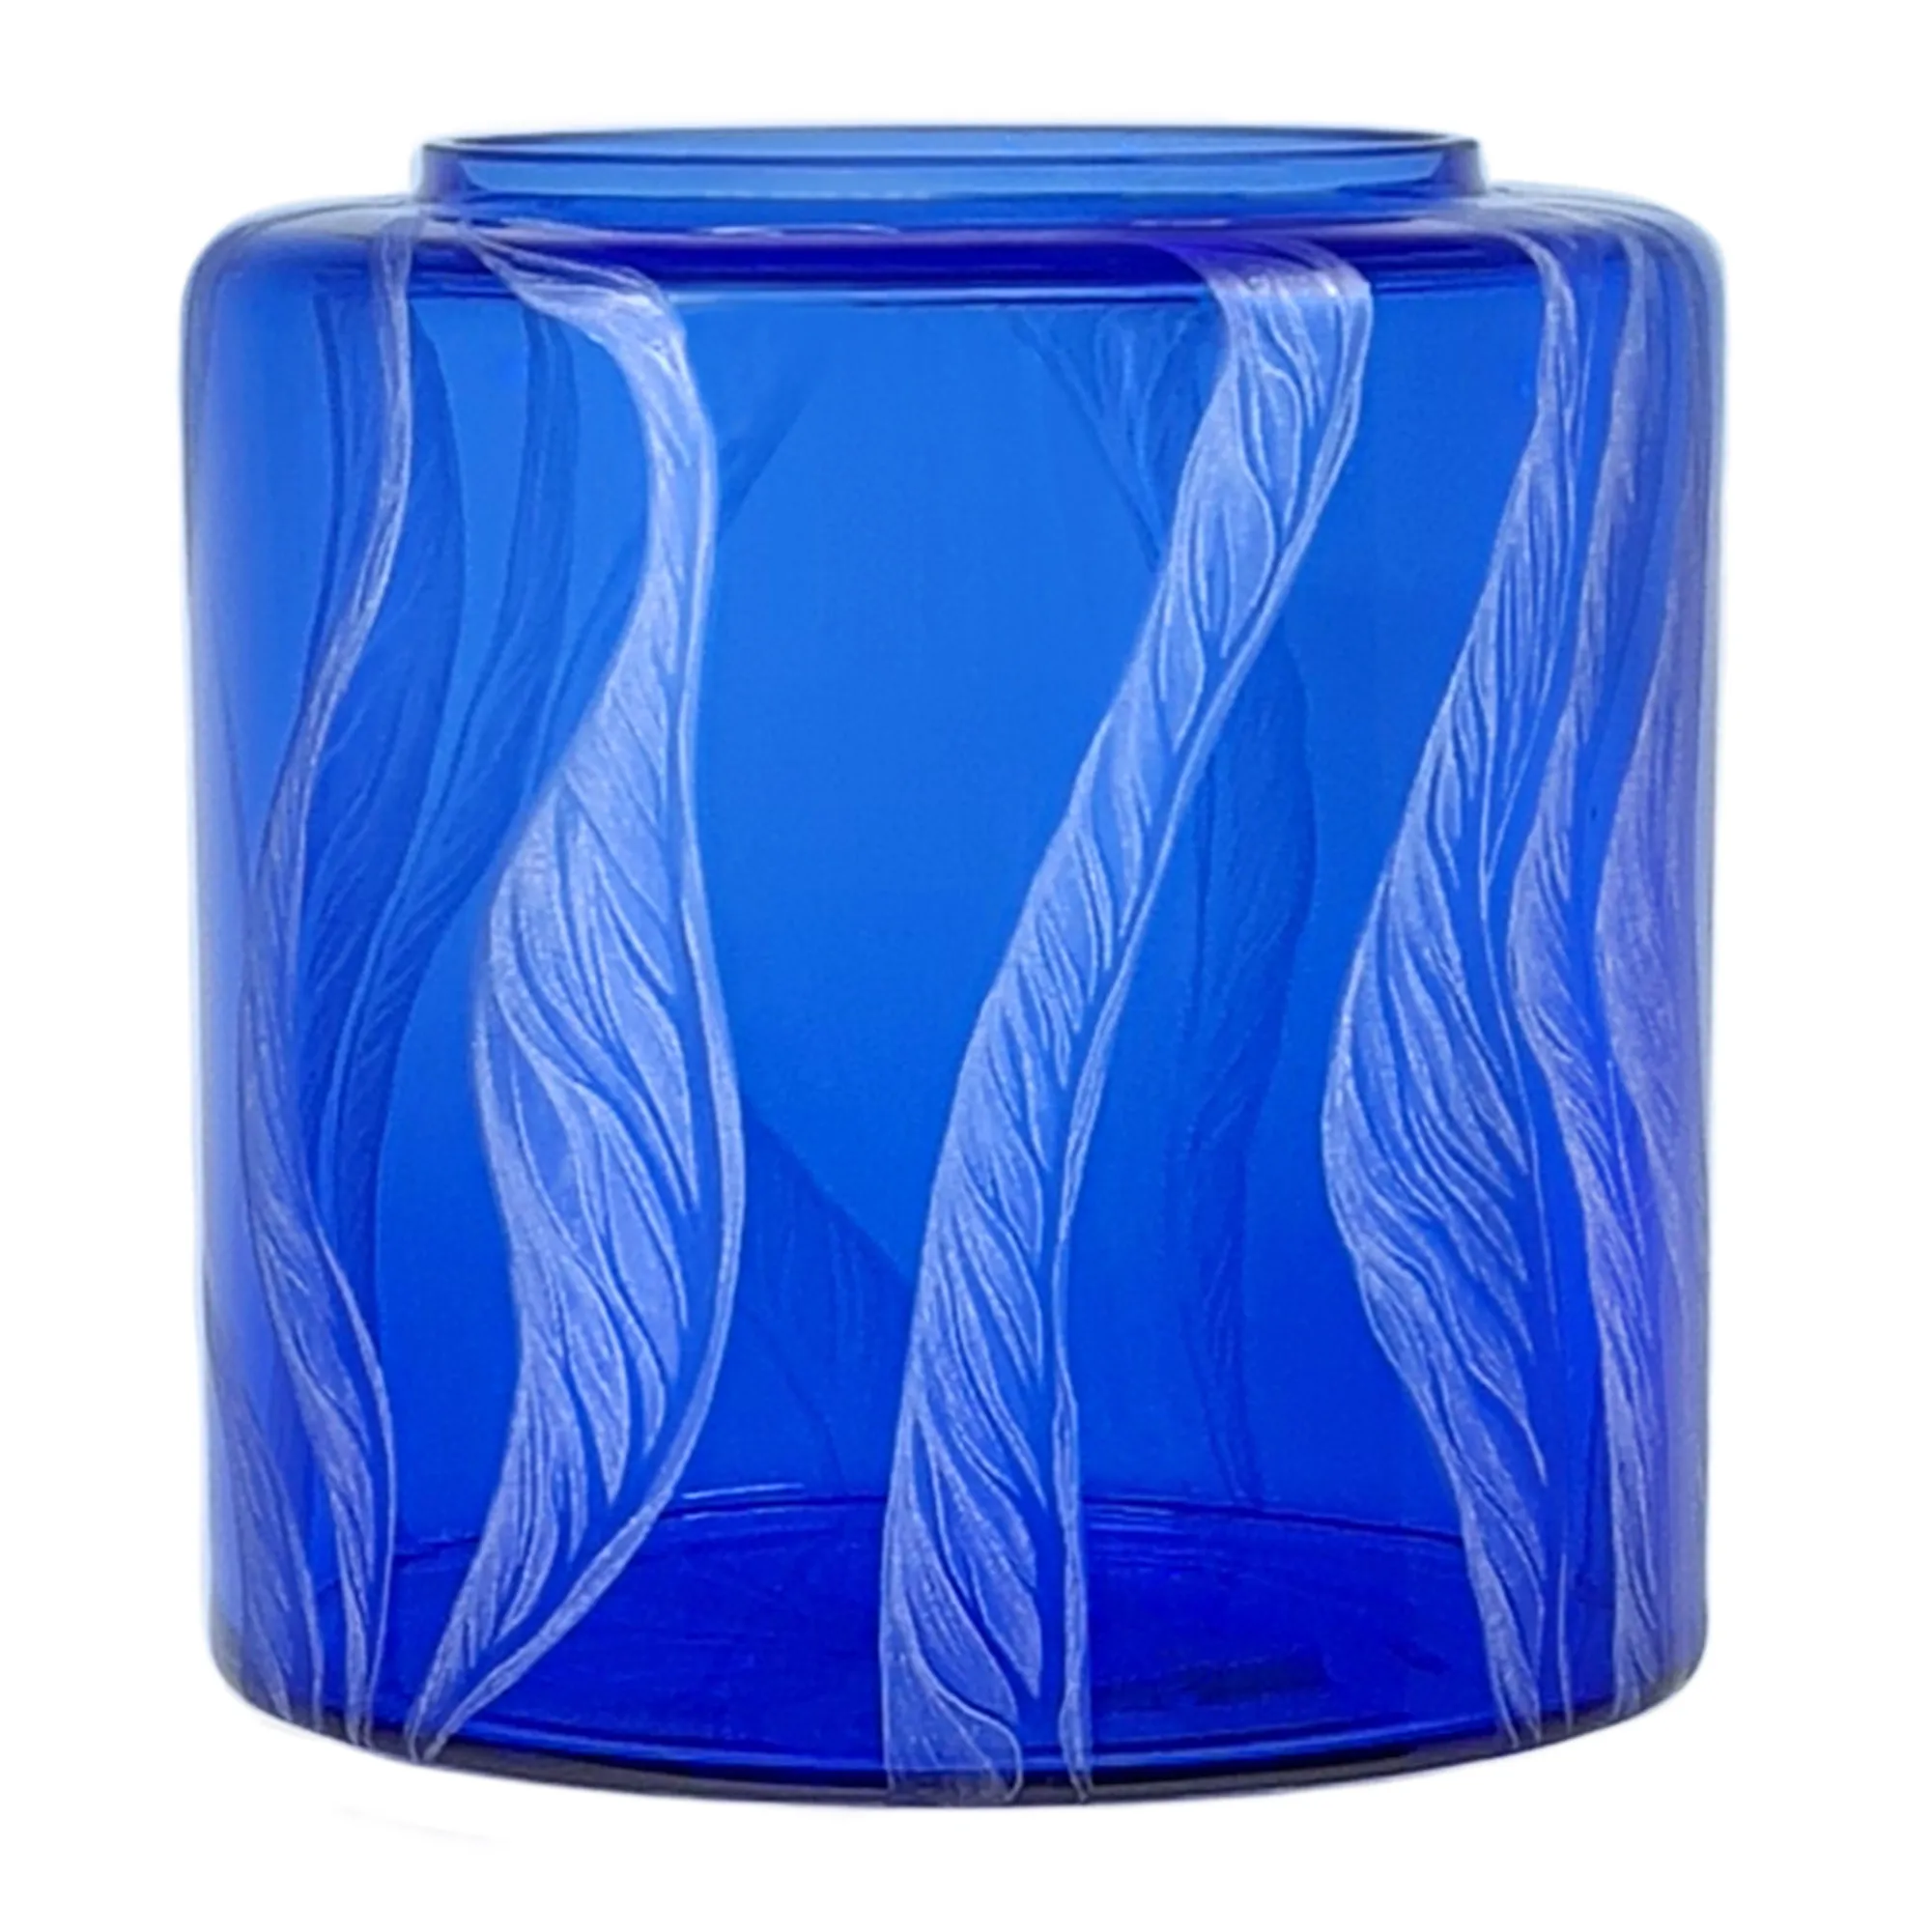 Vorratstank für Wasserfilter Mini mit einer Handgravur. Die Gravur zeigt, auf blauem Glas. Wellen die in welligen Linien gerade am Glas noch oben gehen, die Wellen verteilen sich rund um das runde Glas. Ansicht von rechts.